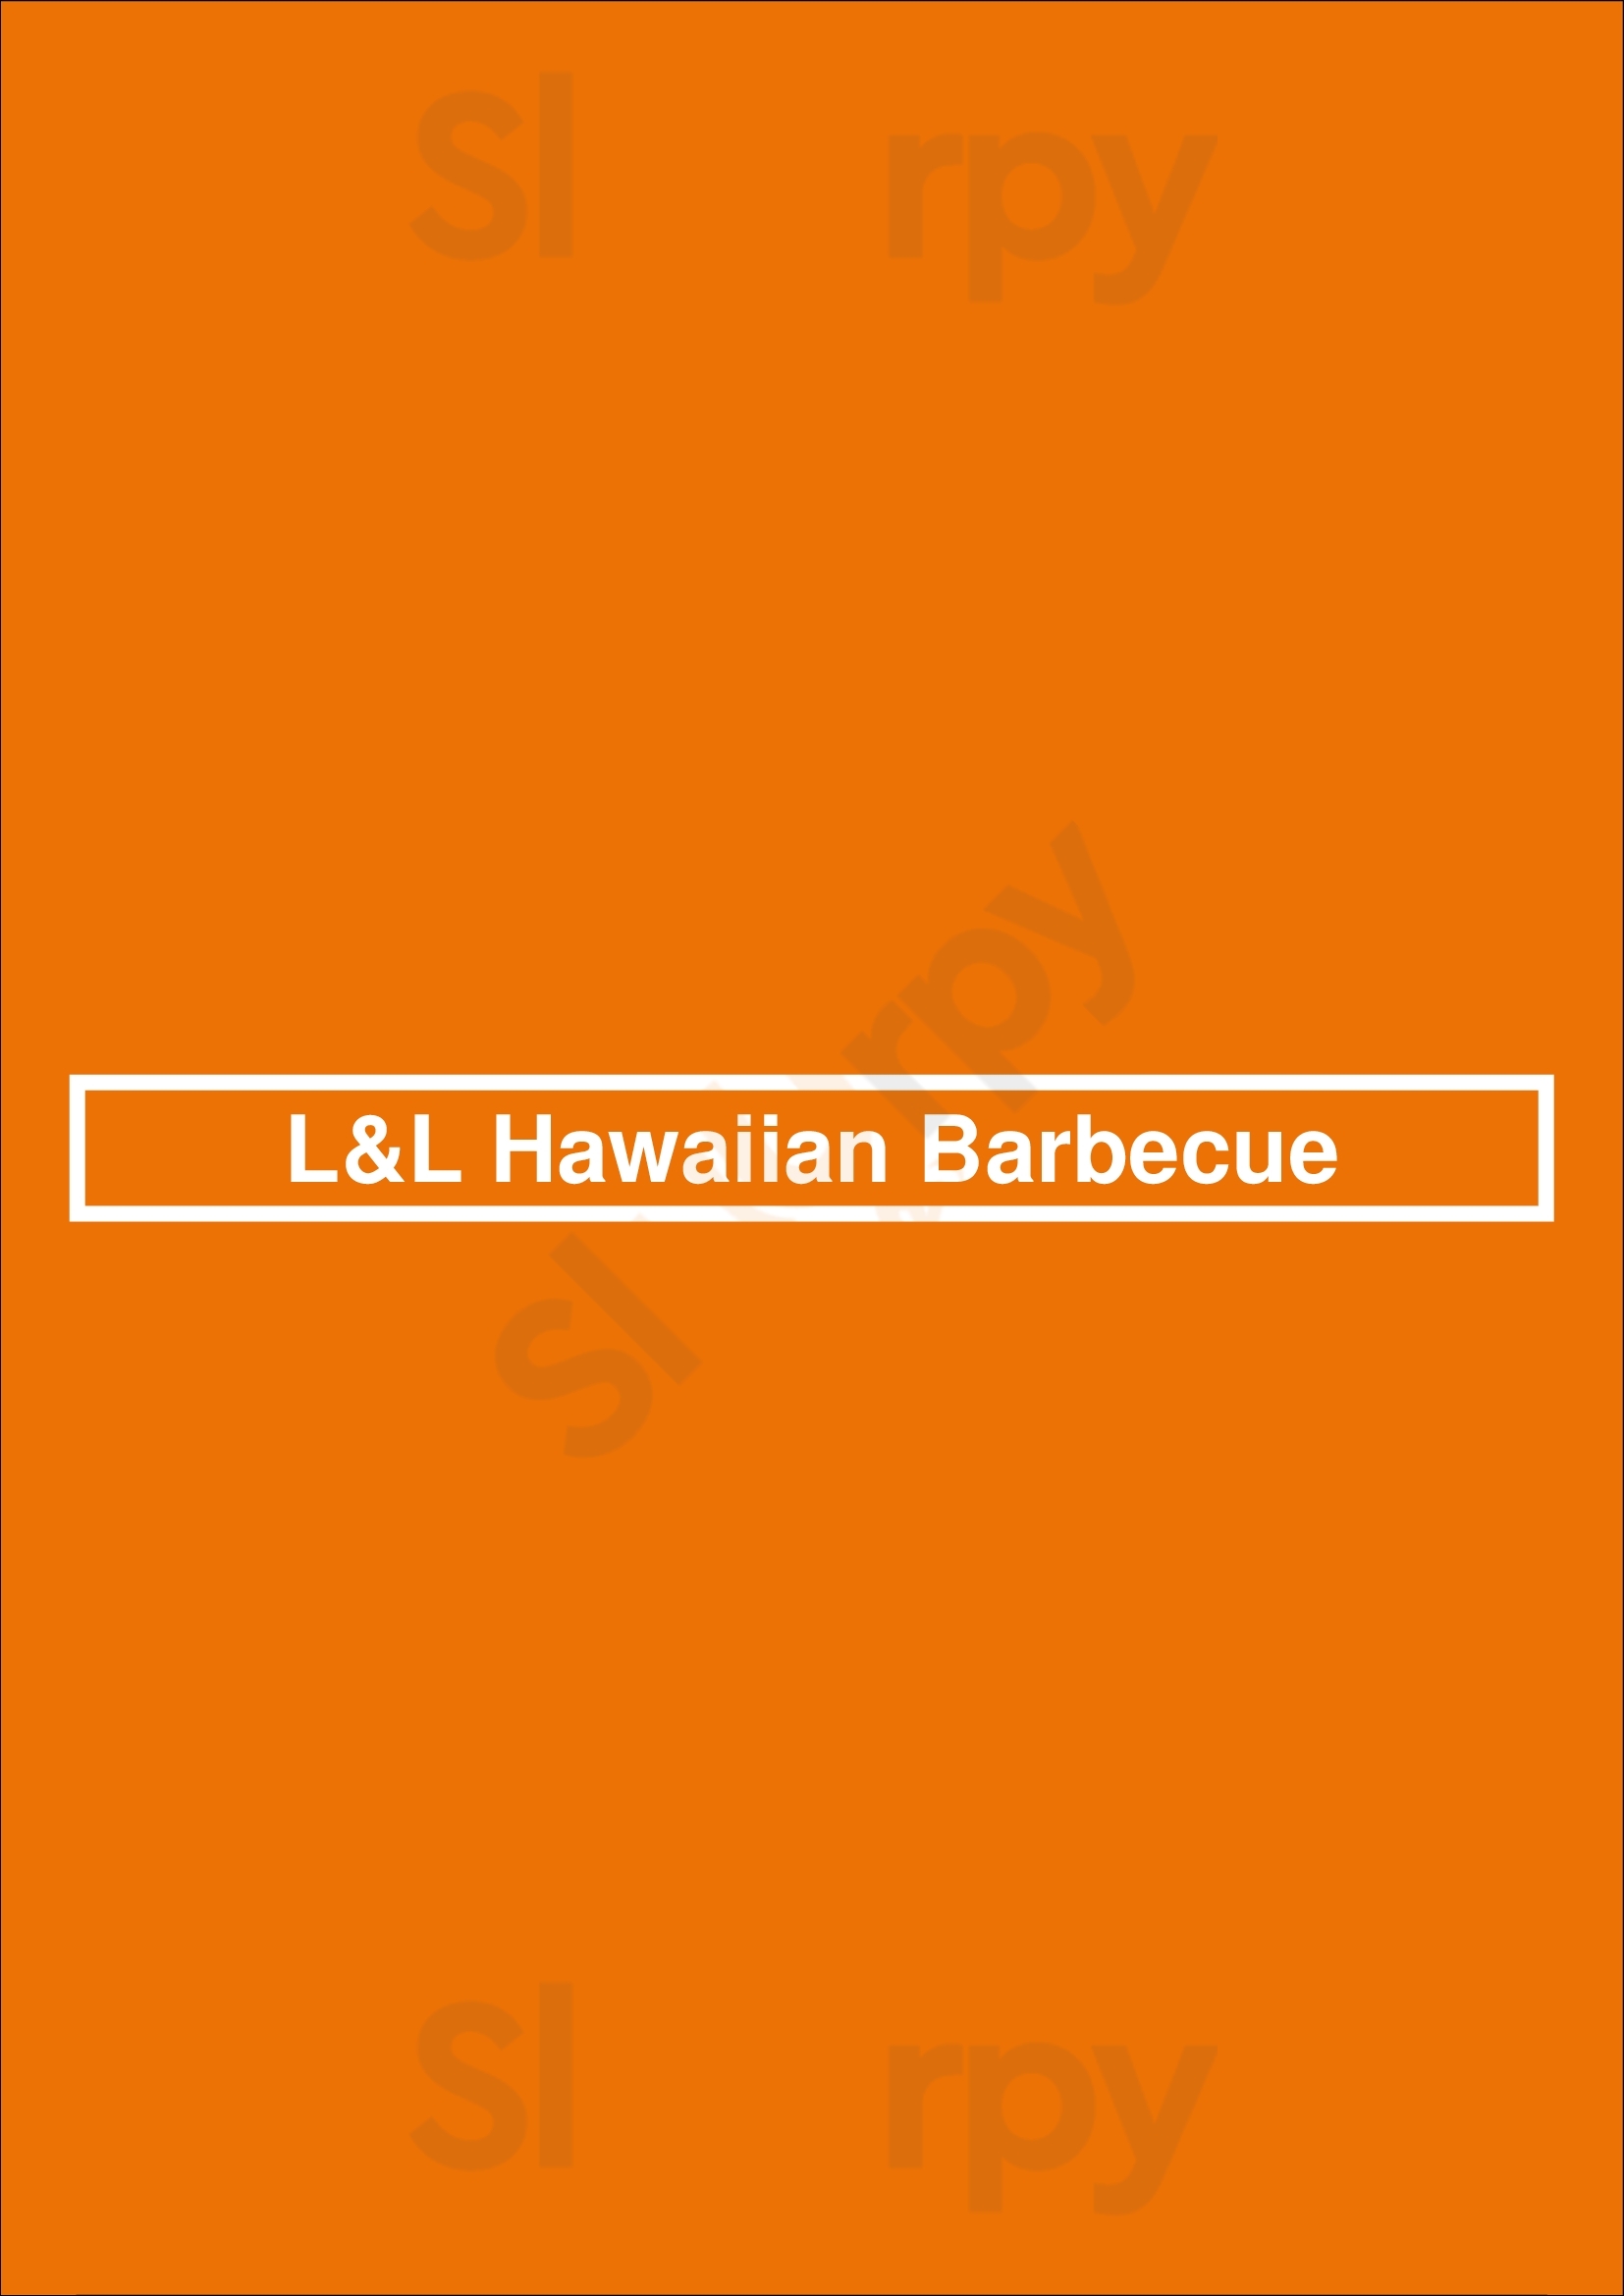 L&l Hawaiian Barbecue San Diego Menu - 1